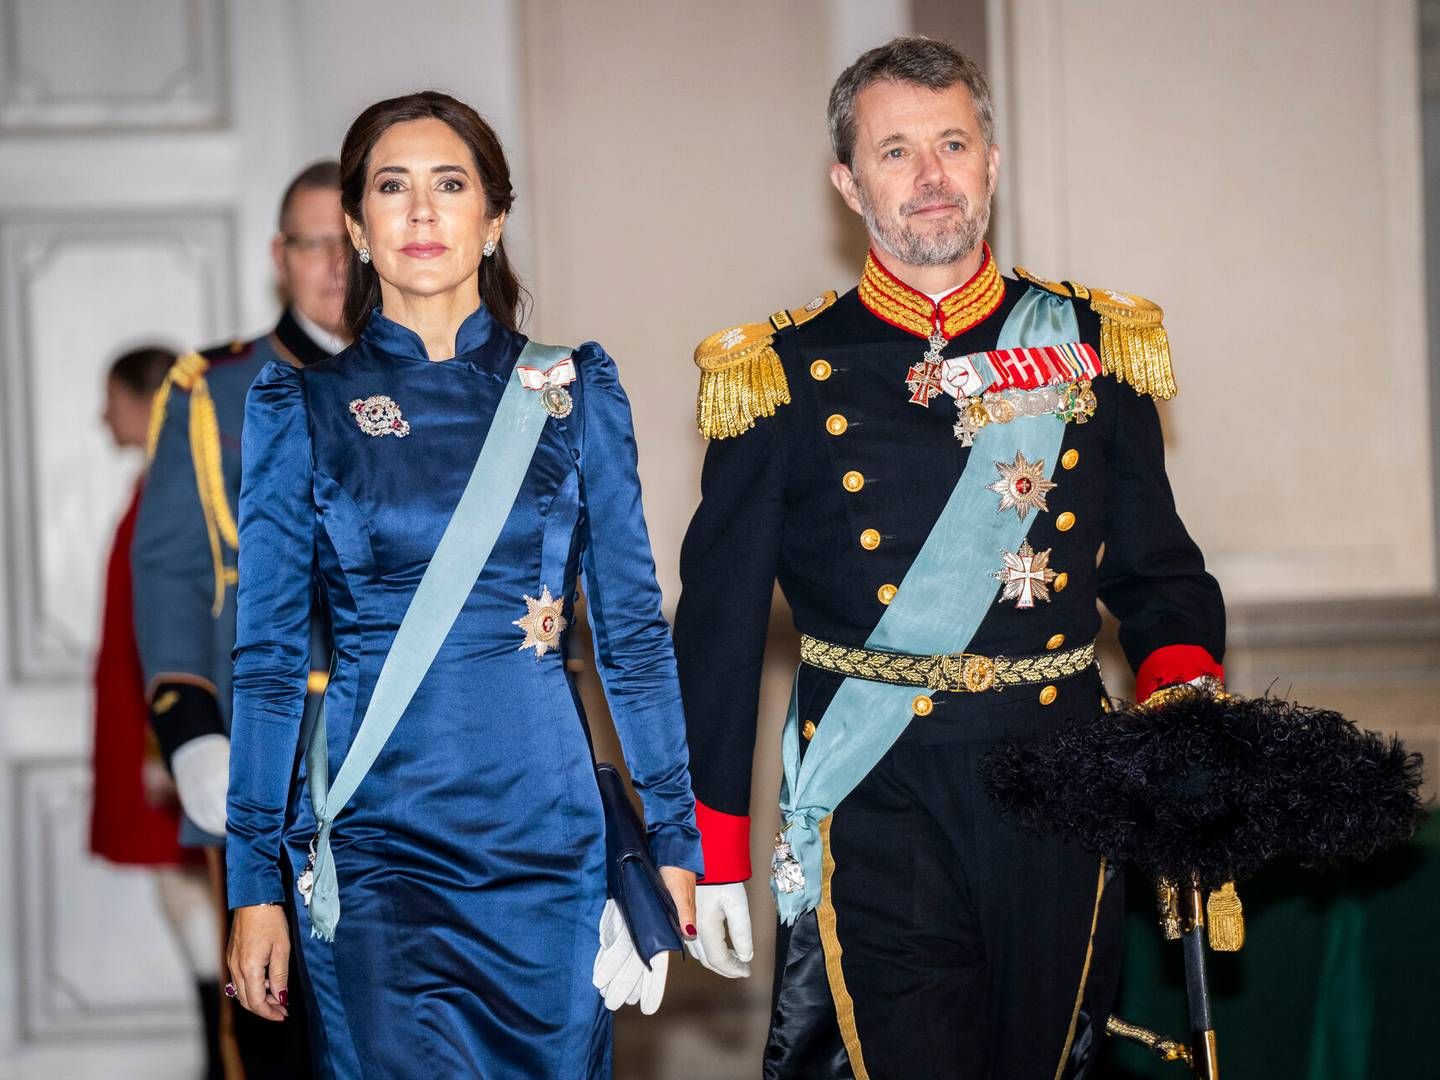 Kronprins Frederik og kronprinsesse Mary kan snart kalde sig henholdsvis konge og dronning. | Foto: Ida Marie Odgaard/Ritzau Scanpix